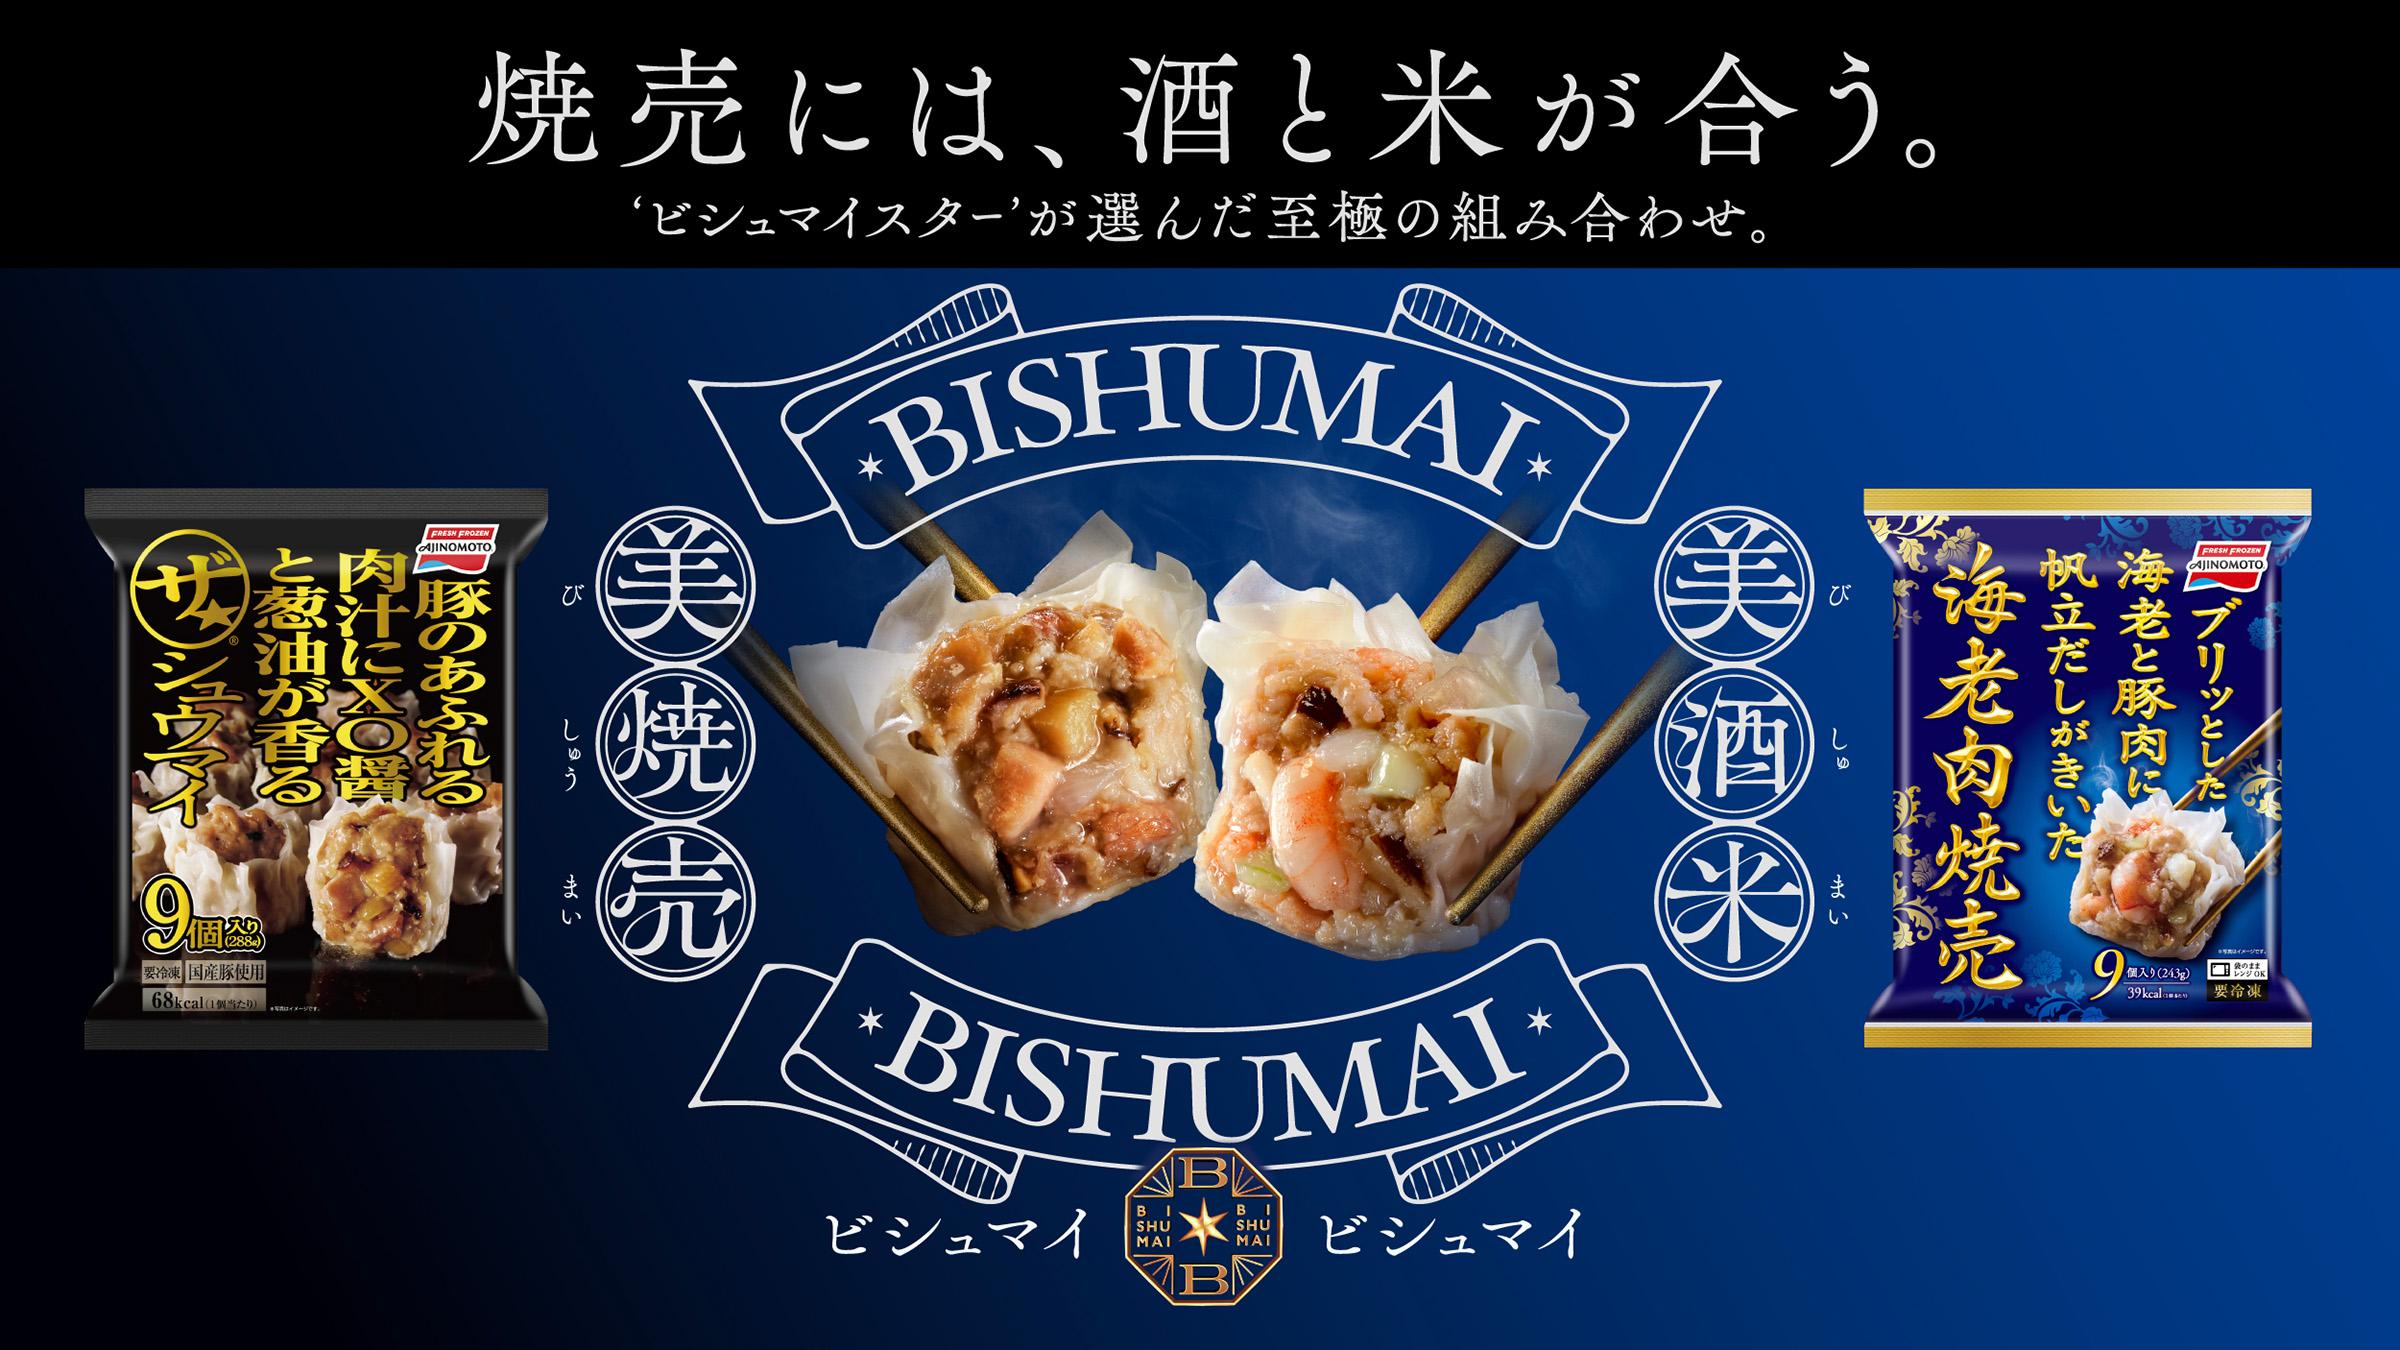 味の素冷凍食品株式会社 ザ★®シュウマイ&海老肉焼売プロモーション BISHUMAI BISHUMAI